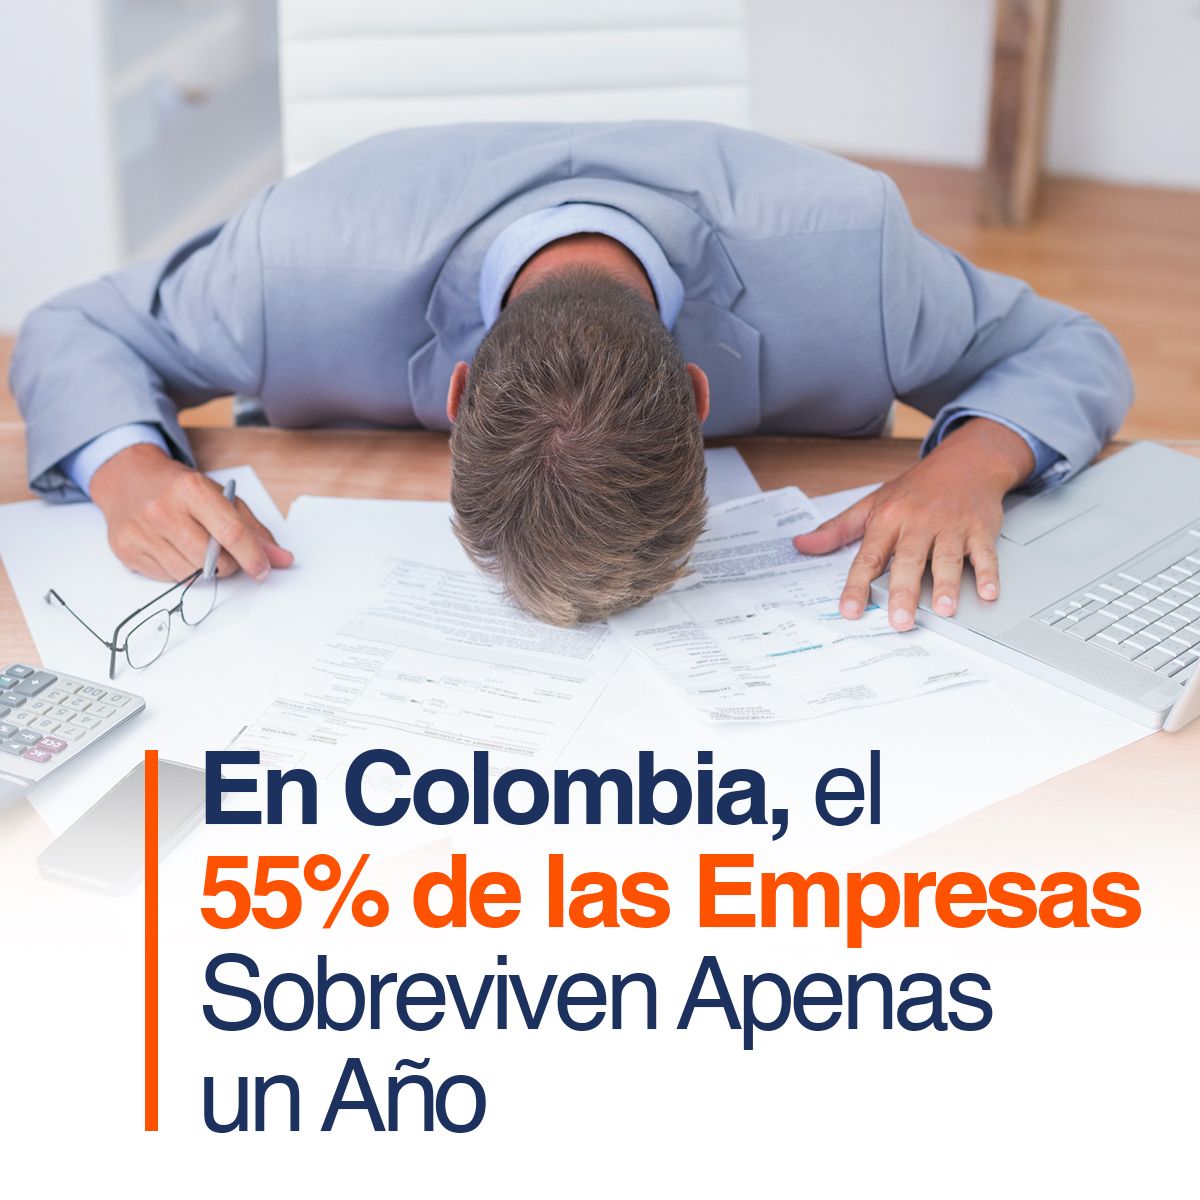 En Colombia, el 55% de las Empresas Sobreviven Apenas un Año